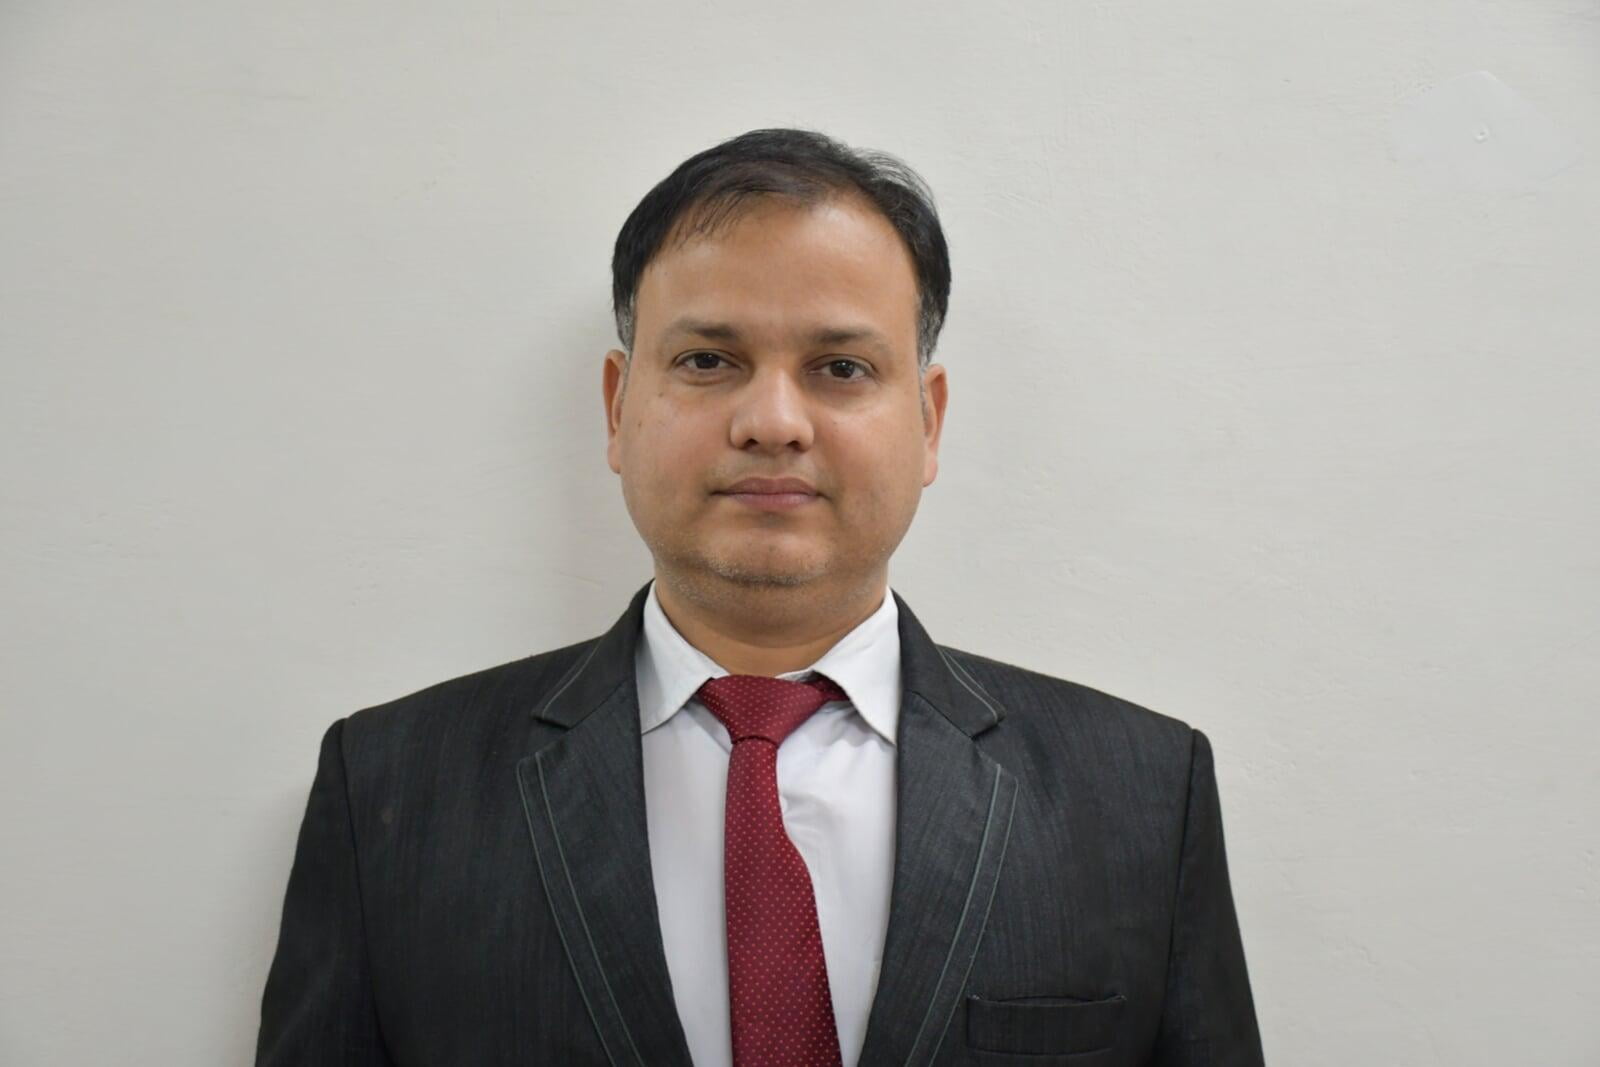 Mr. Prabhakar Sharma B.Tech ECE Faculty at ITS